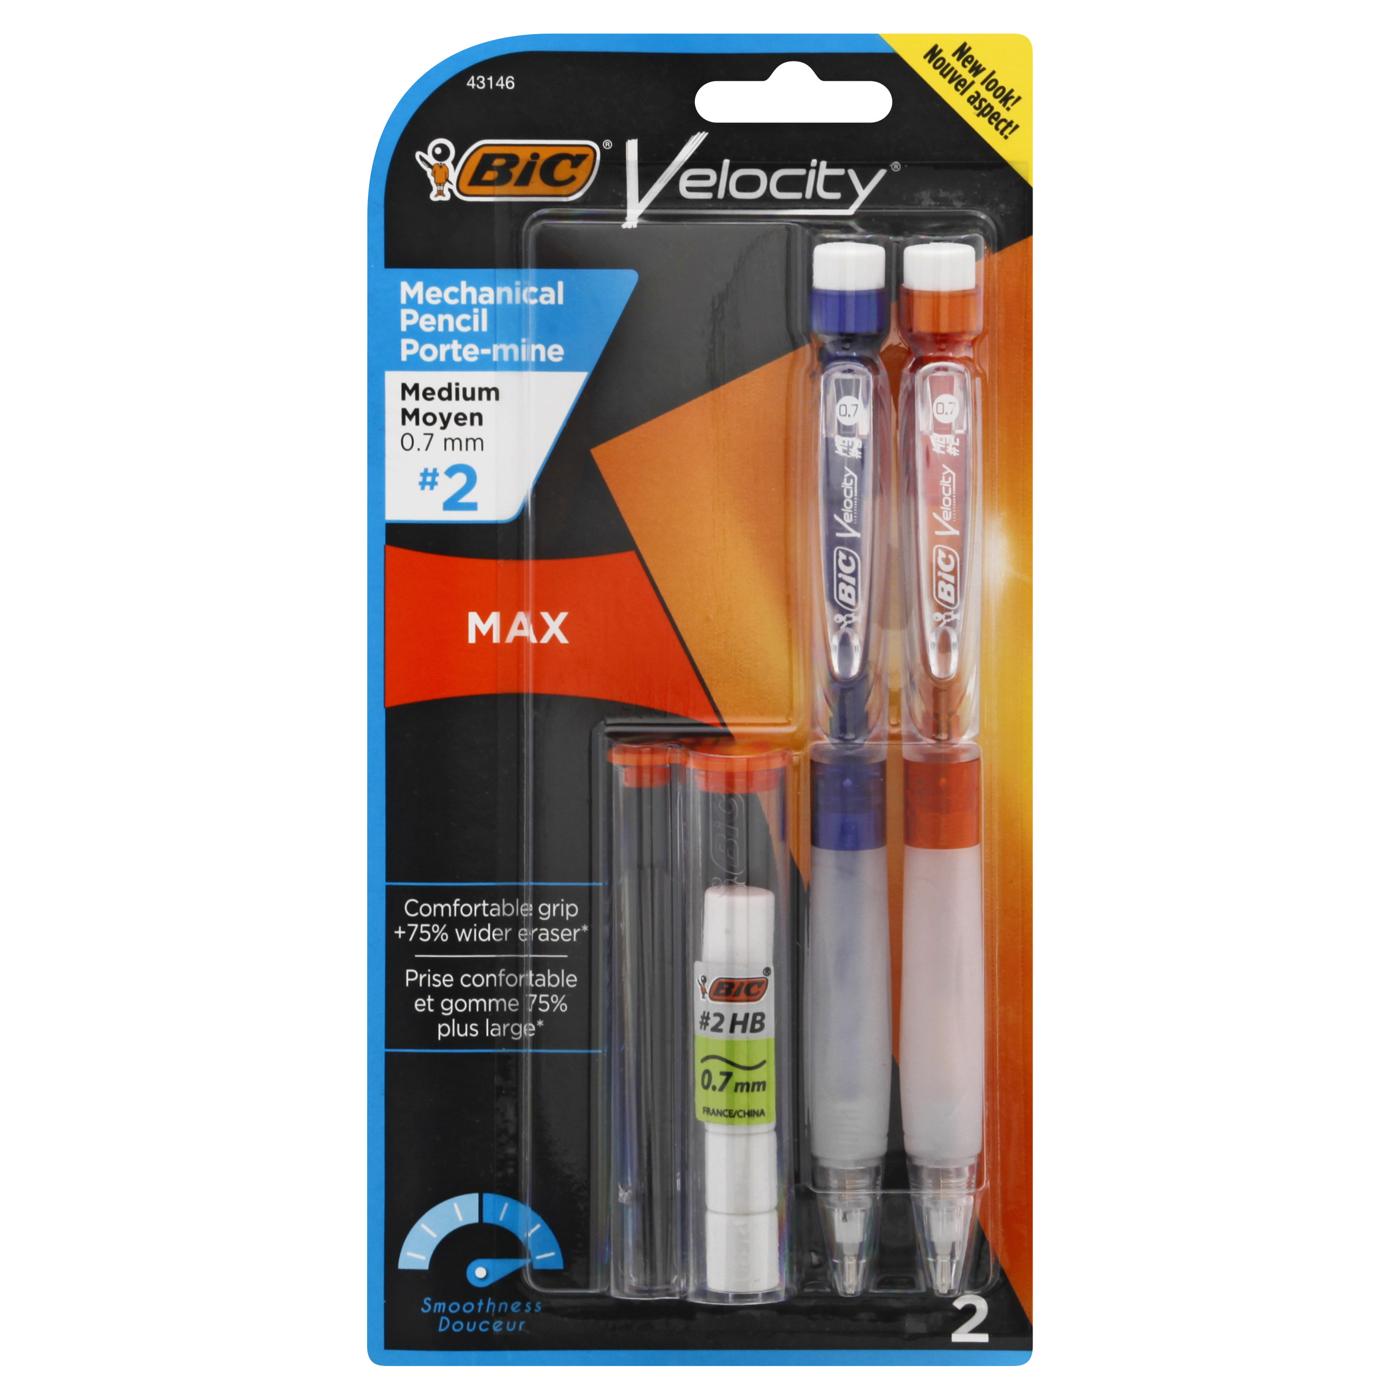 BIC Velocity Max 0.7mm Mechanical Pencils - Shop Pencils at H-E-B